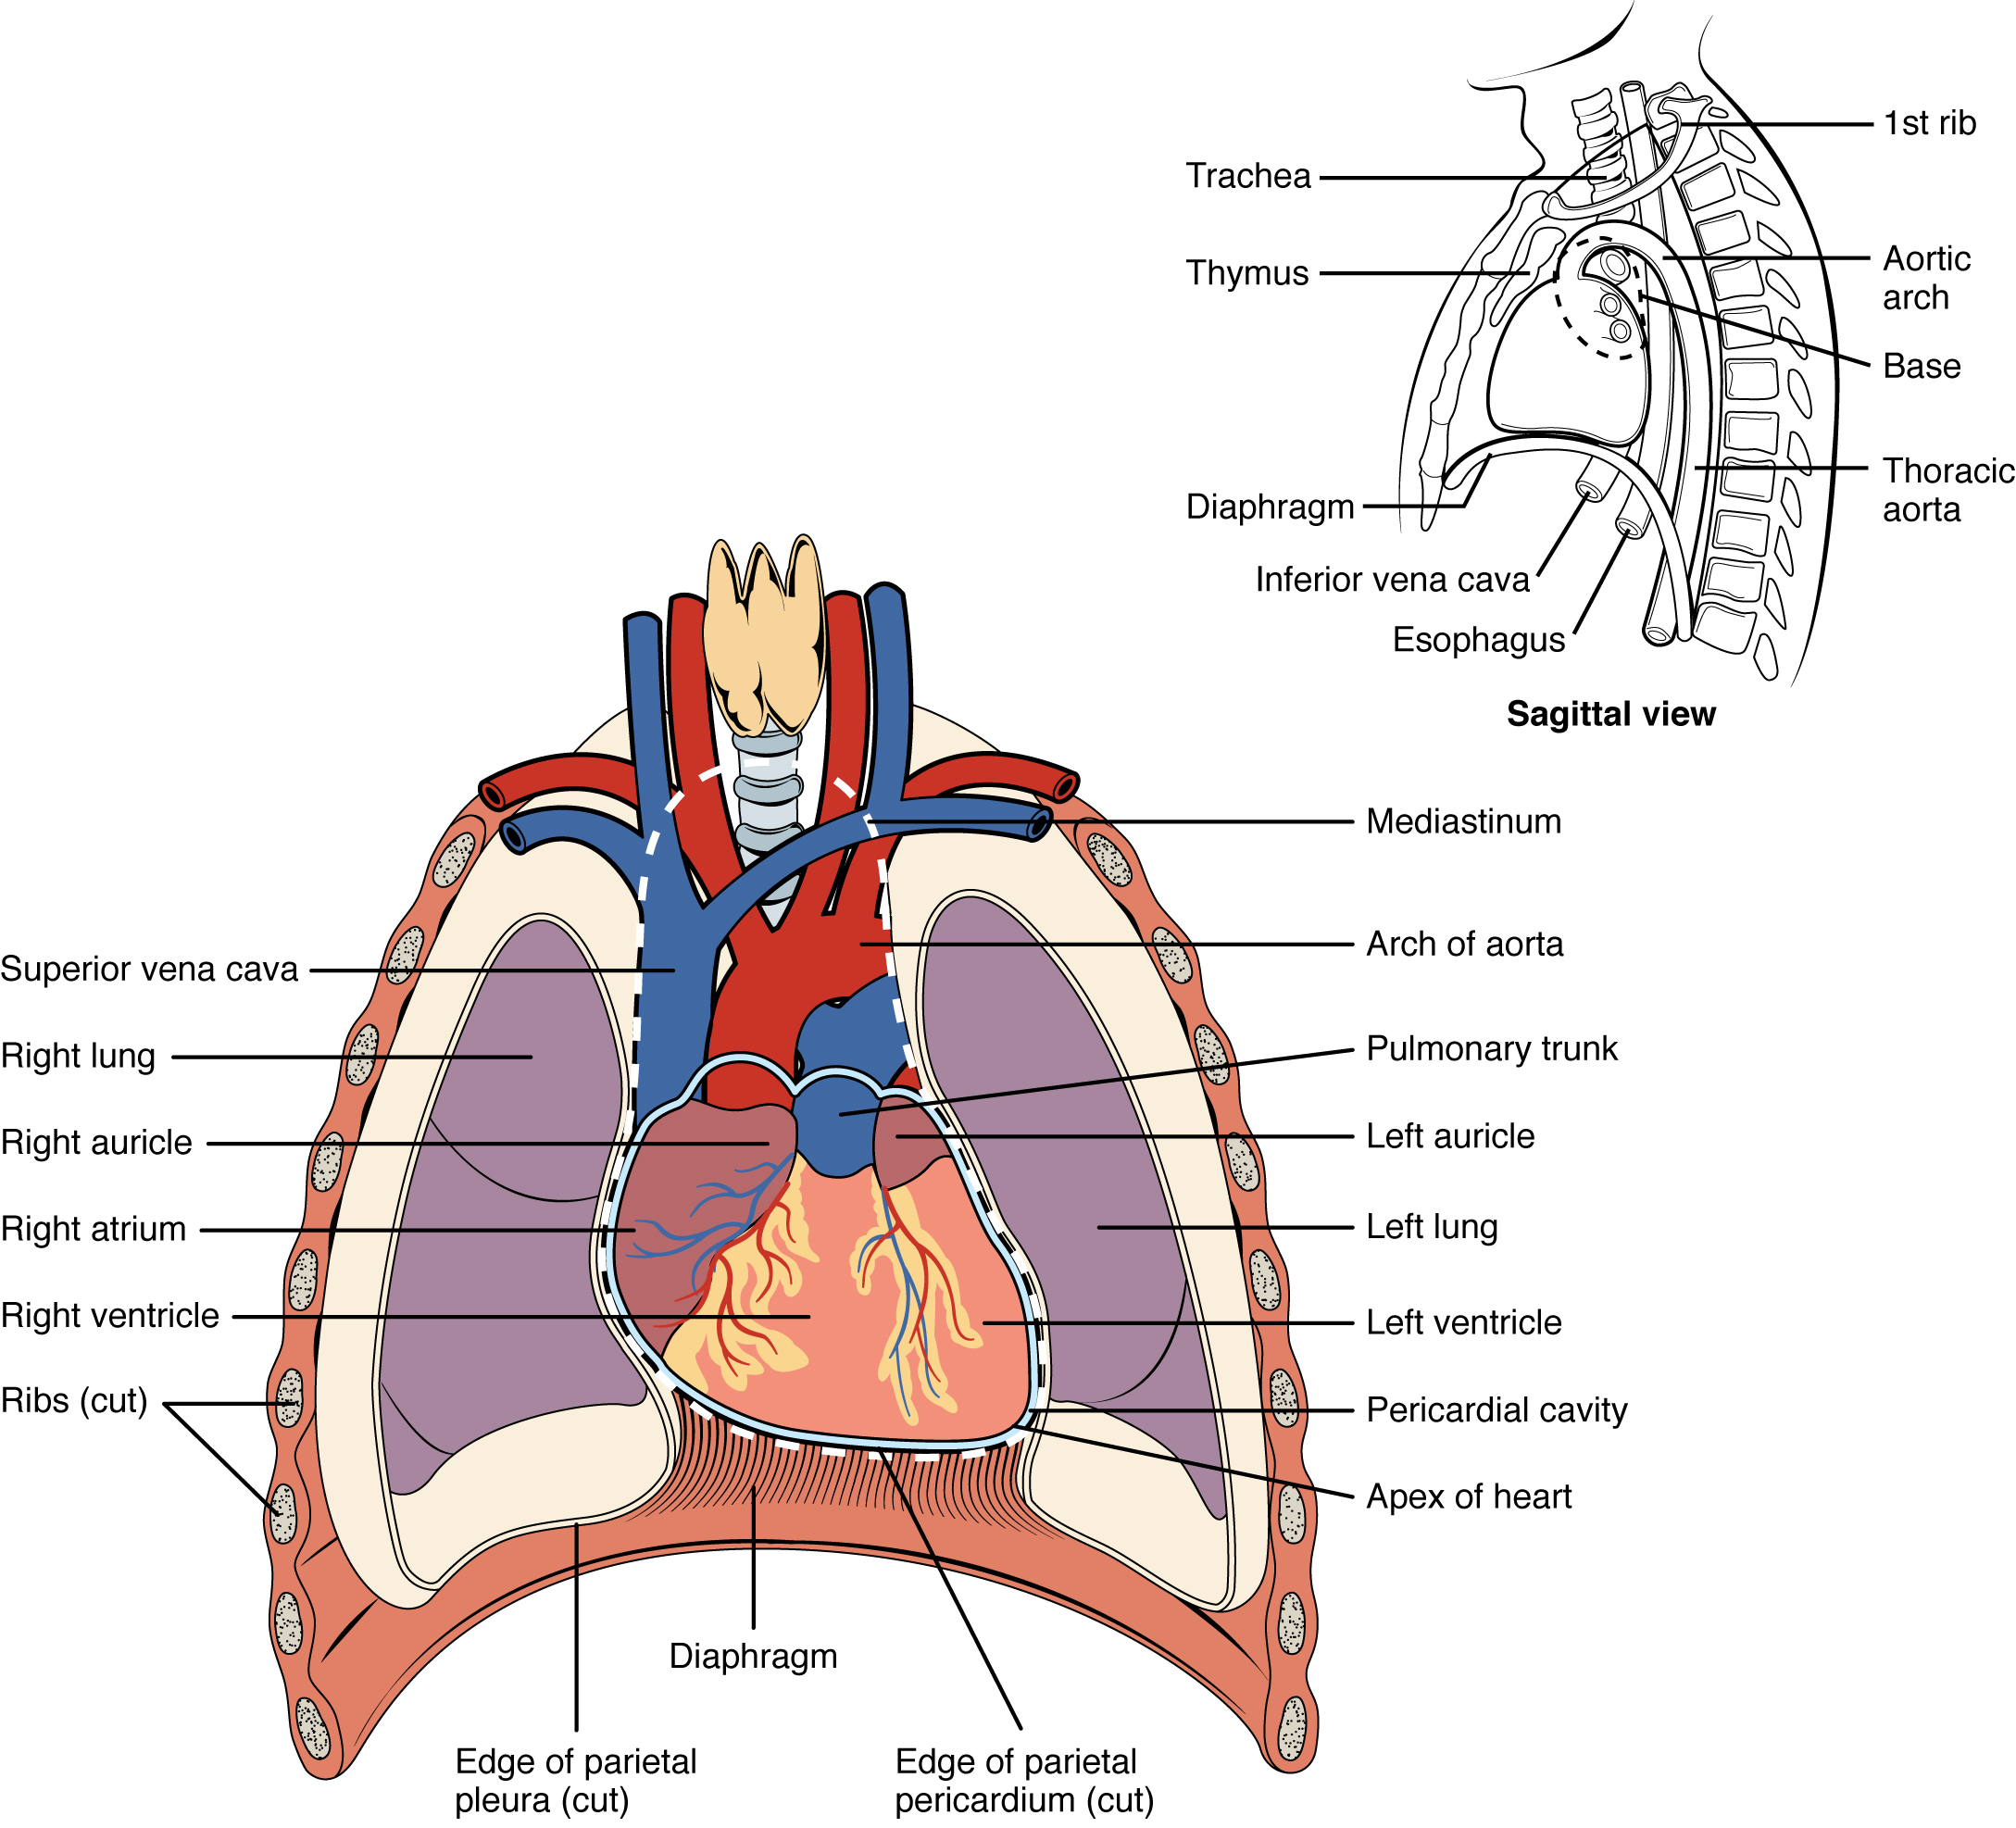 Este diagrama muestra la ubicación del corazón en el tórax (vistas sagital y anterior). Las etiquetas de la vista sagital leen (desde arriba, en sentido horario): primera costilla, arco aórtico, arco torácico, esófago, vena cava inferior, diafragma, timo, tráquea. Las etiquetas de la vista anterior dicen (desde arriba, en sentido horario): mediastino, arco de aorta, tronco pulmonar, aurícula izquierda, pulmón izquierdo, ventrículo izquierdo, cavidad pericárdica, ápice del corazón, borde del pericardio parietal, diafragma, borde de pleura parietal, costillas, ventrículo derecho, aurícula derecha, aurícula derecha, pulmón derecho, superior vena cava.